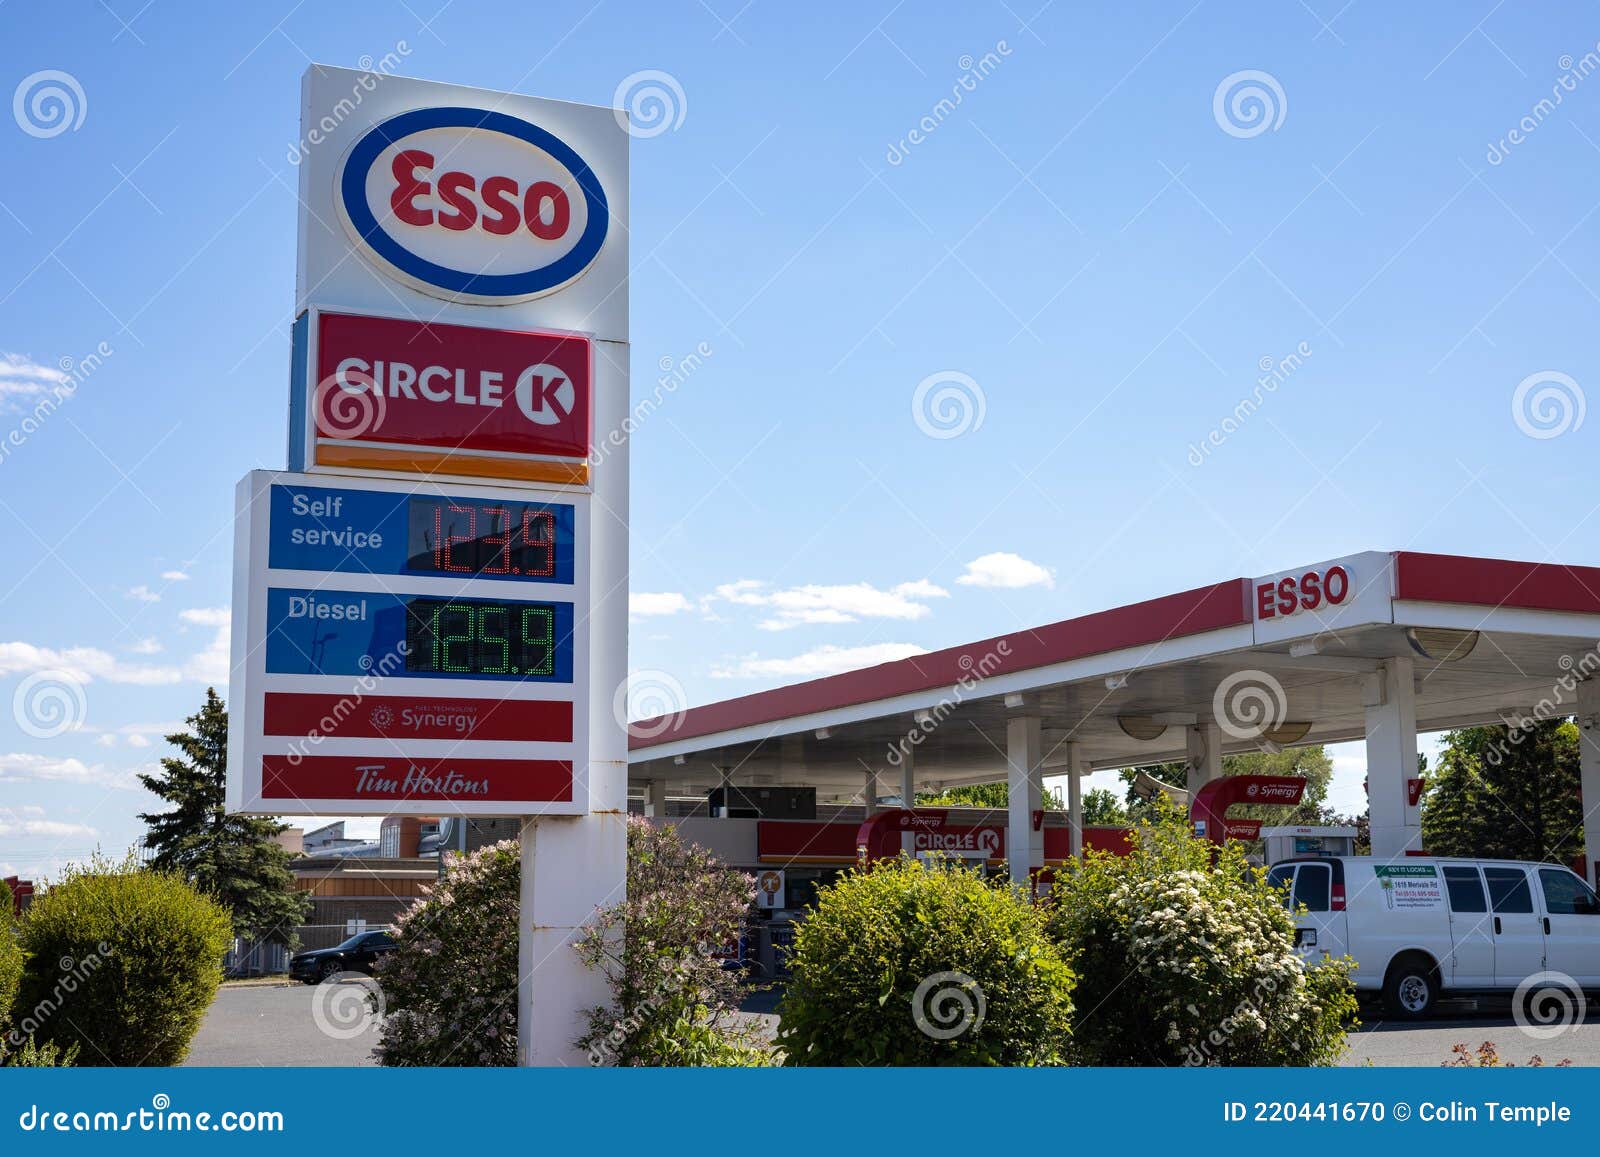 gas prices canada ontario